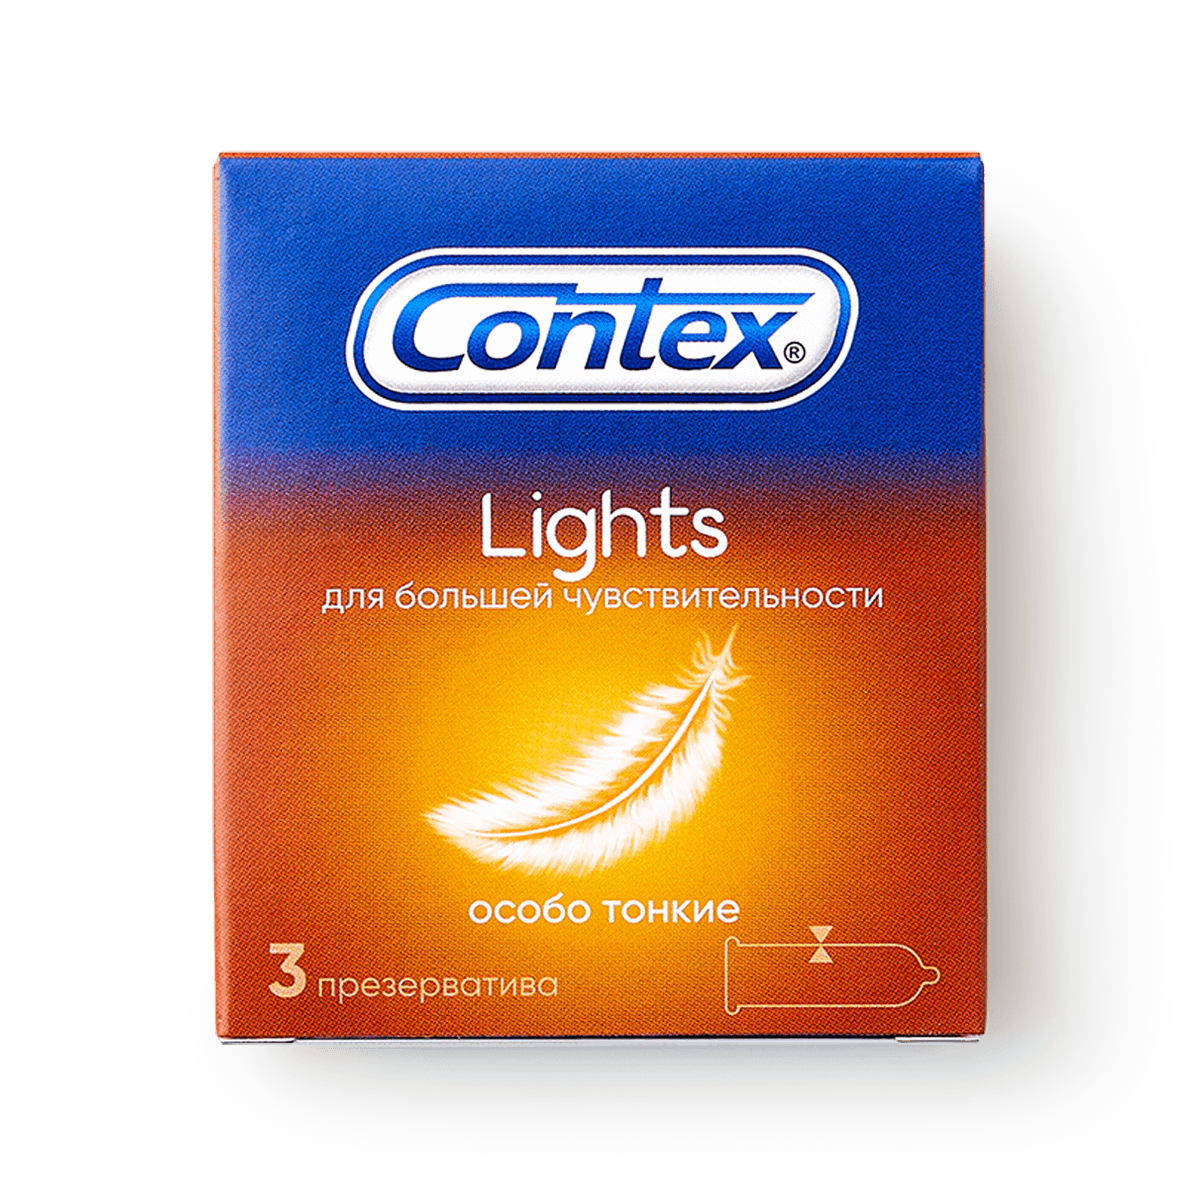 Презервативы Contex (Контекс) Light особо тонкие 18 шт. Рекитт Бенкизер Хелскэар (ЮК) Лтд - фото №15